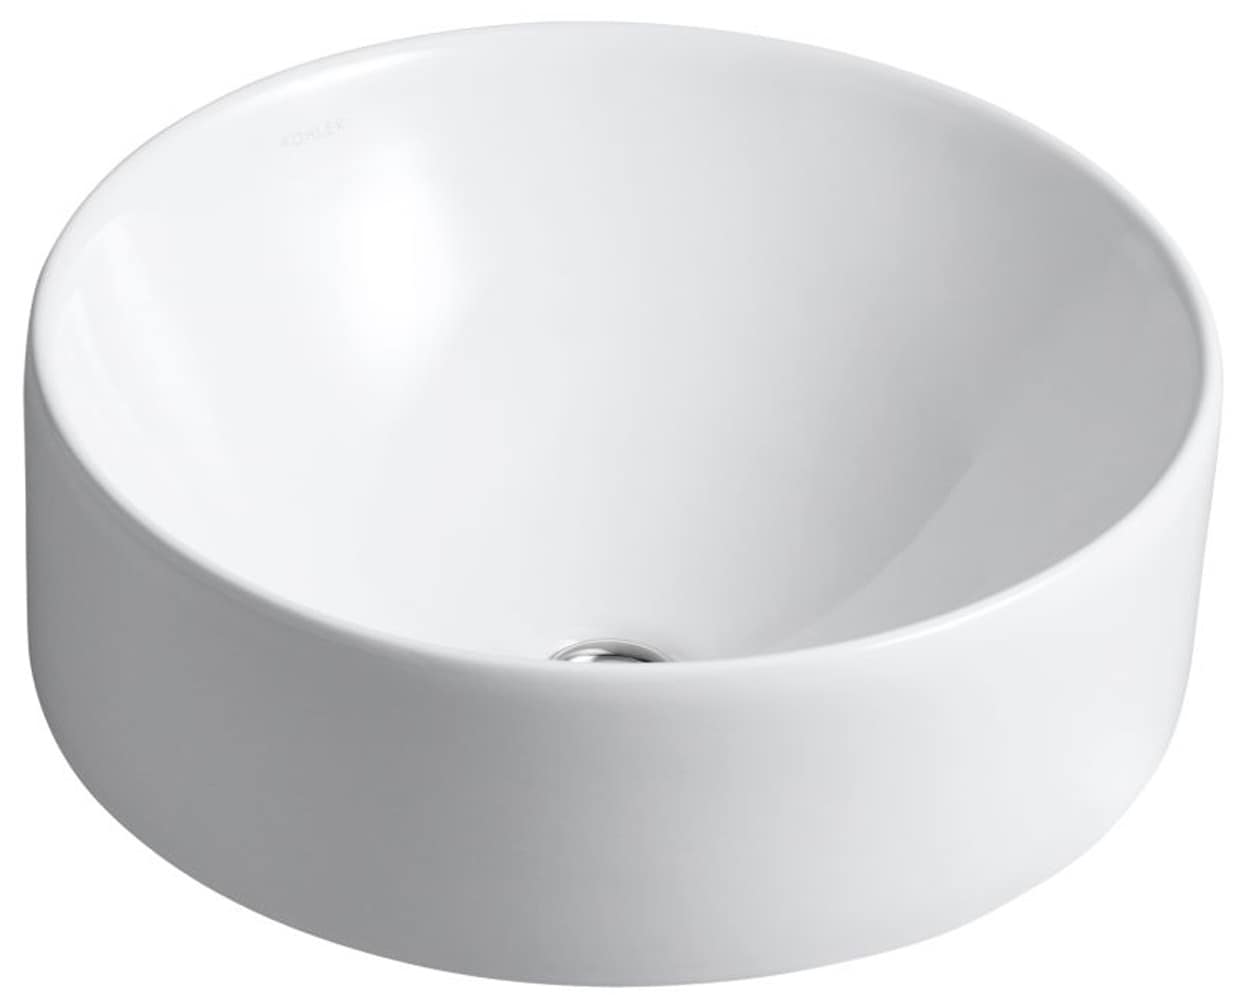 Vox Collection K-14800-0 16.50"" x 16.50"" x 8"" Vessel Bathroom Sink in -  Kohler, K148000